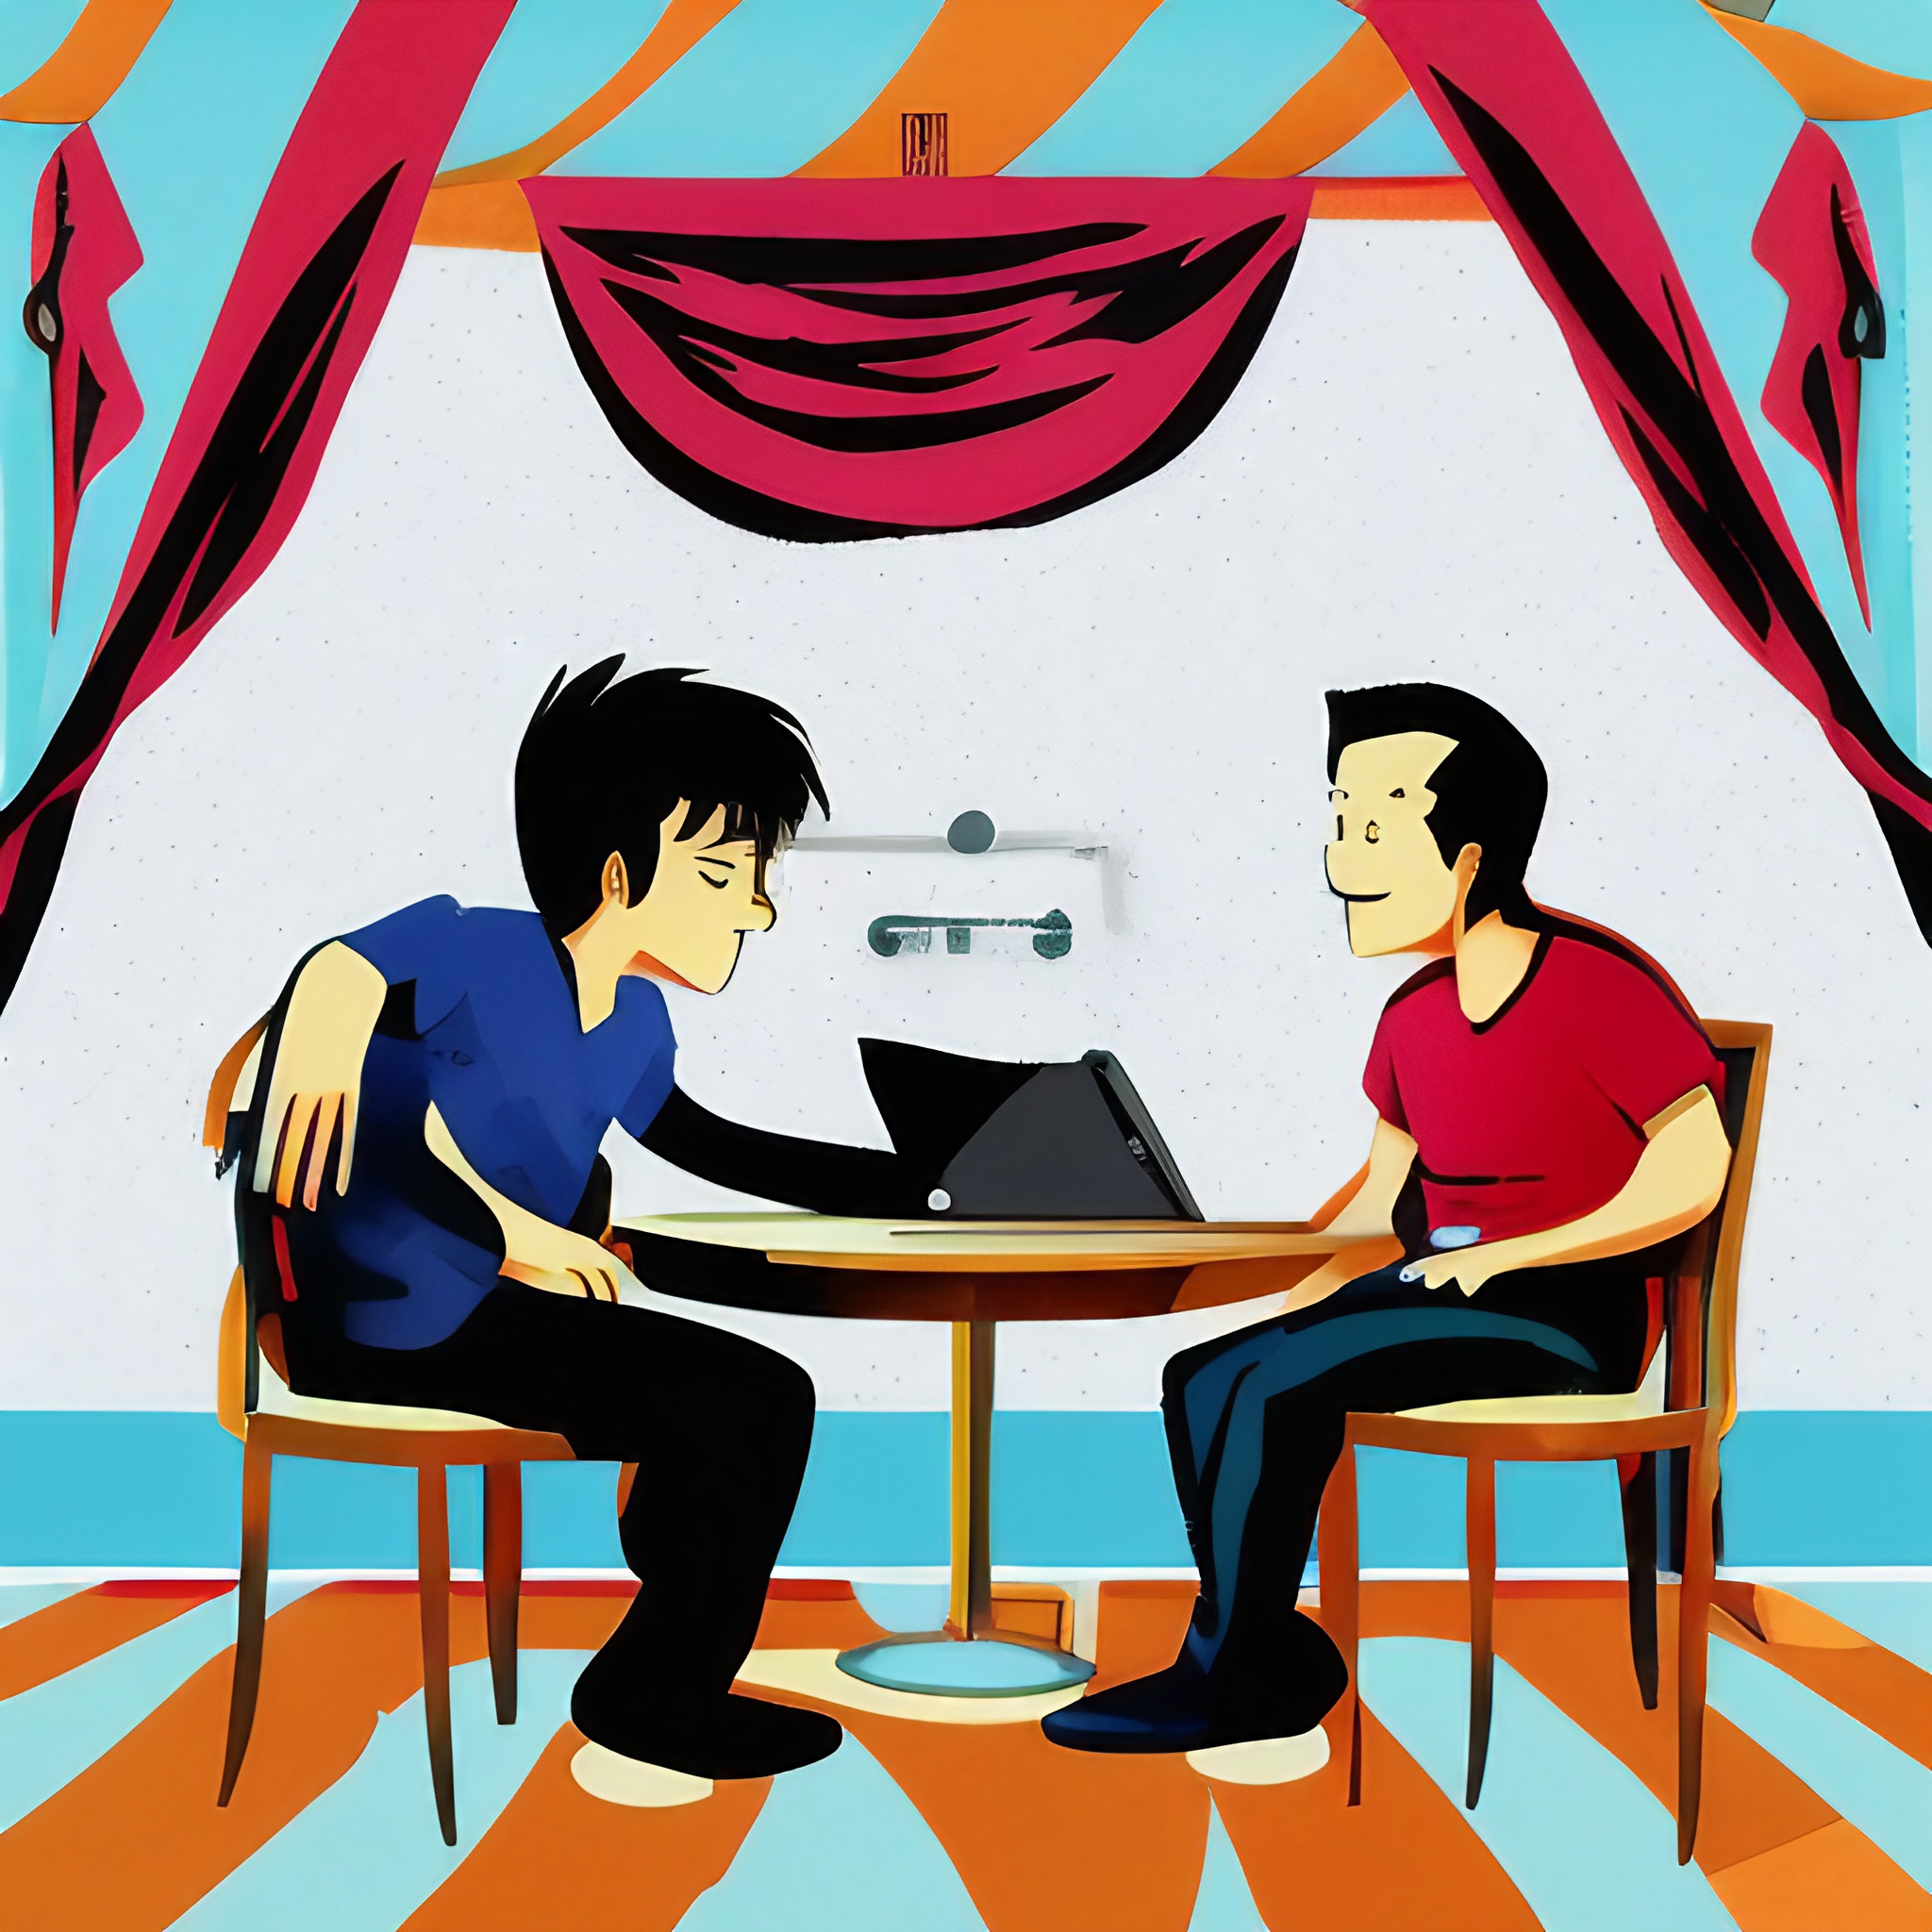 grafika w stylu kreskówki na grafice widać dwóch dorosłych rozmawiających mężczyzn siedzących na łóżku